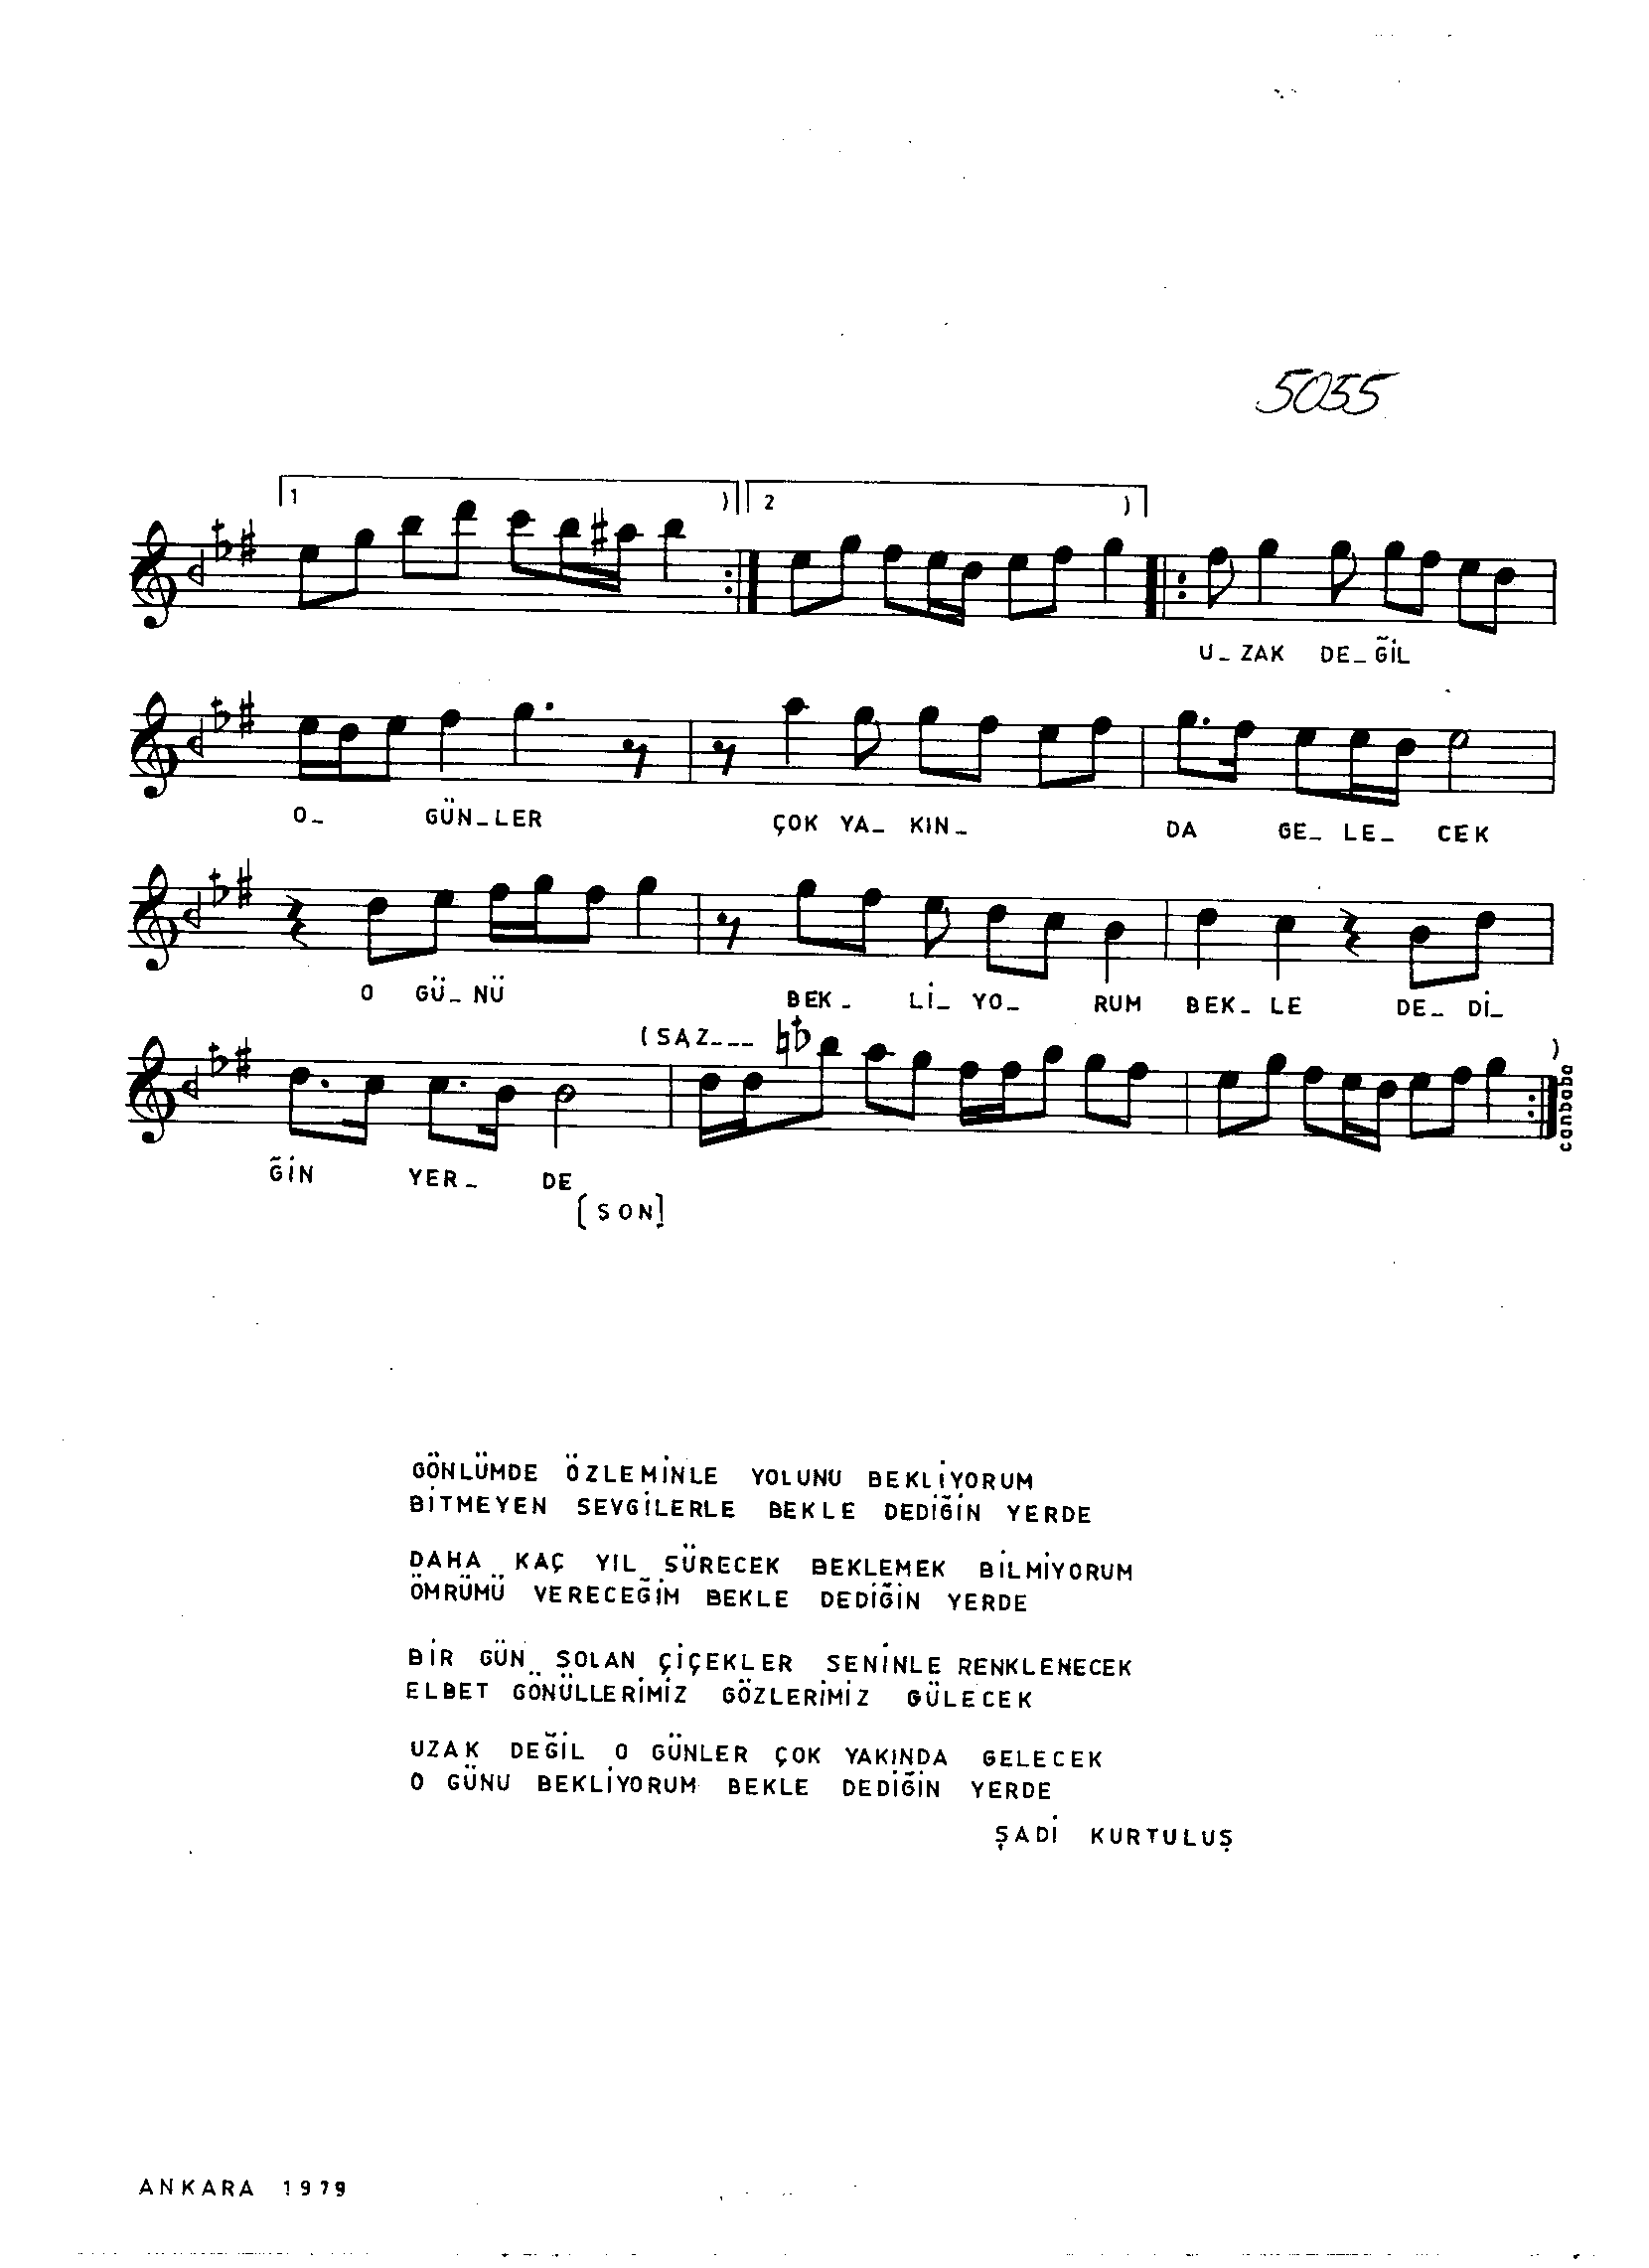 Hüzzâm - Şarkı - Necdet Tokatlıoğlu - Sayfa 2